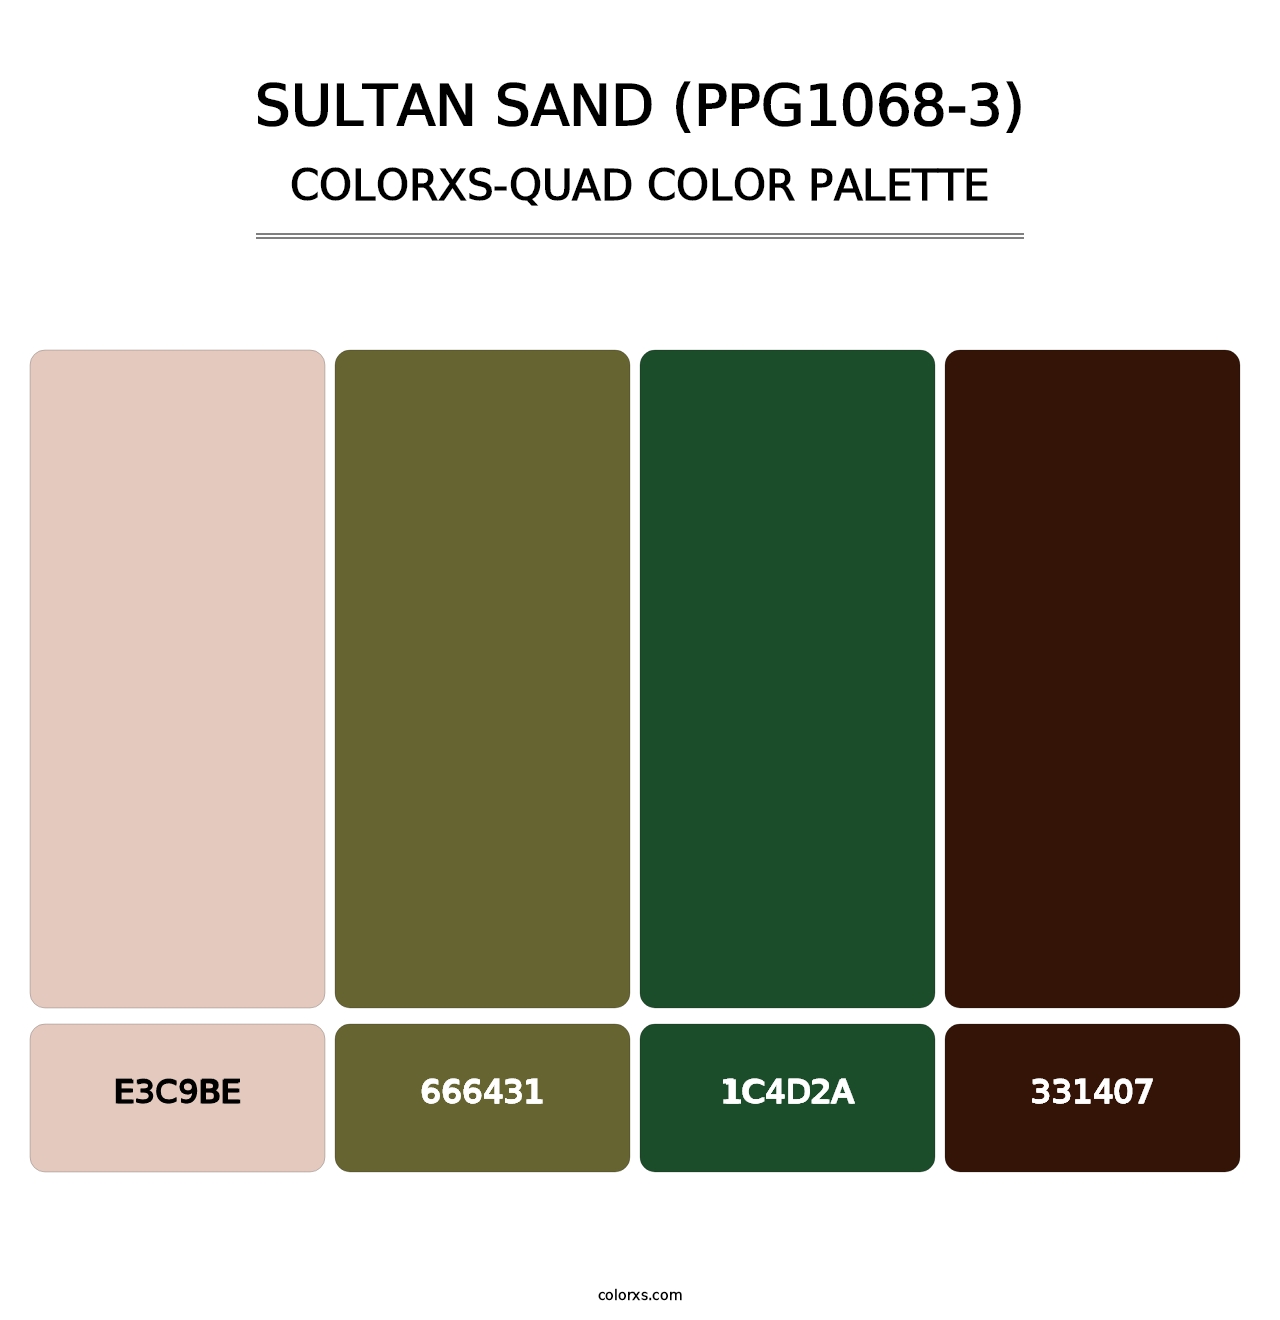 Sultan Sand (PPG1068-3) - Colorxs Quad Palette